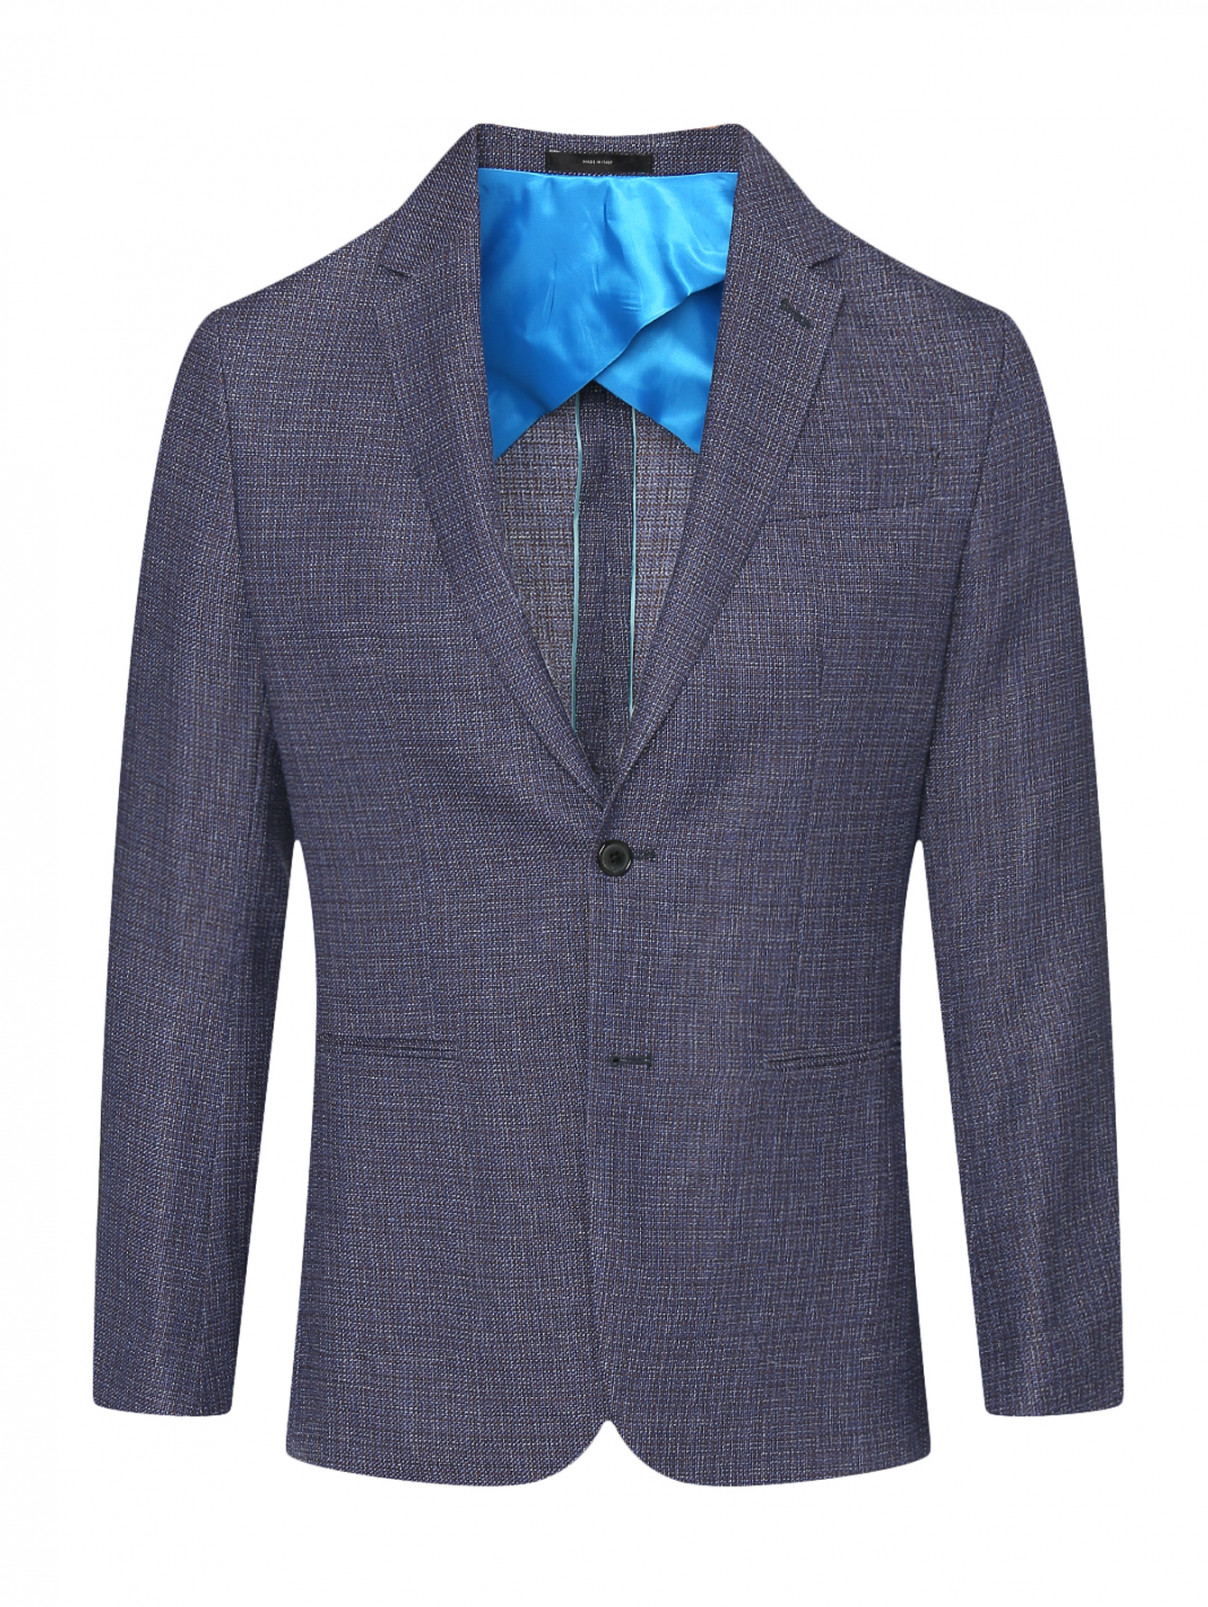 Однобортный пиджак из шерсти и льна Paul Smith  –  Общий вид  – Цвет:  Синий